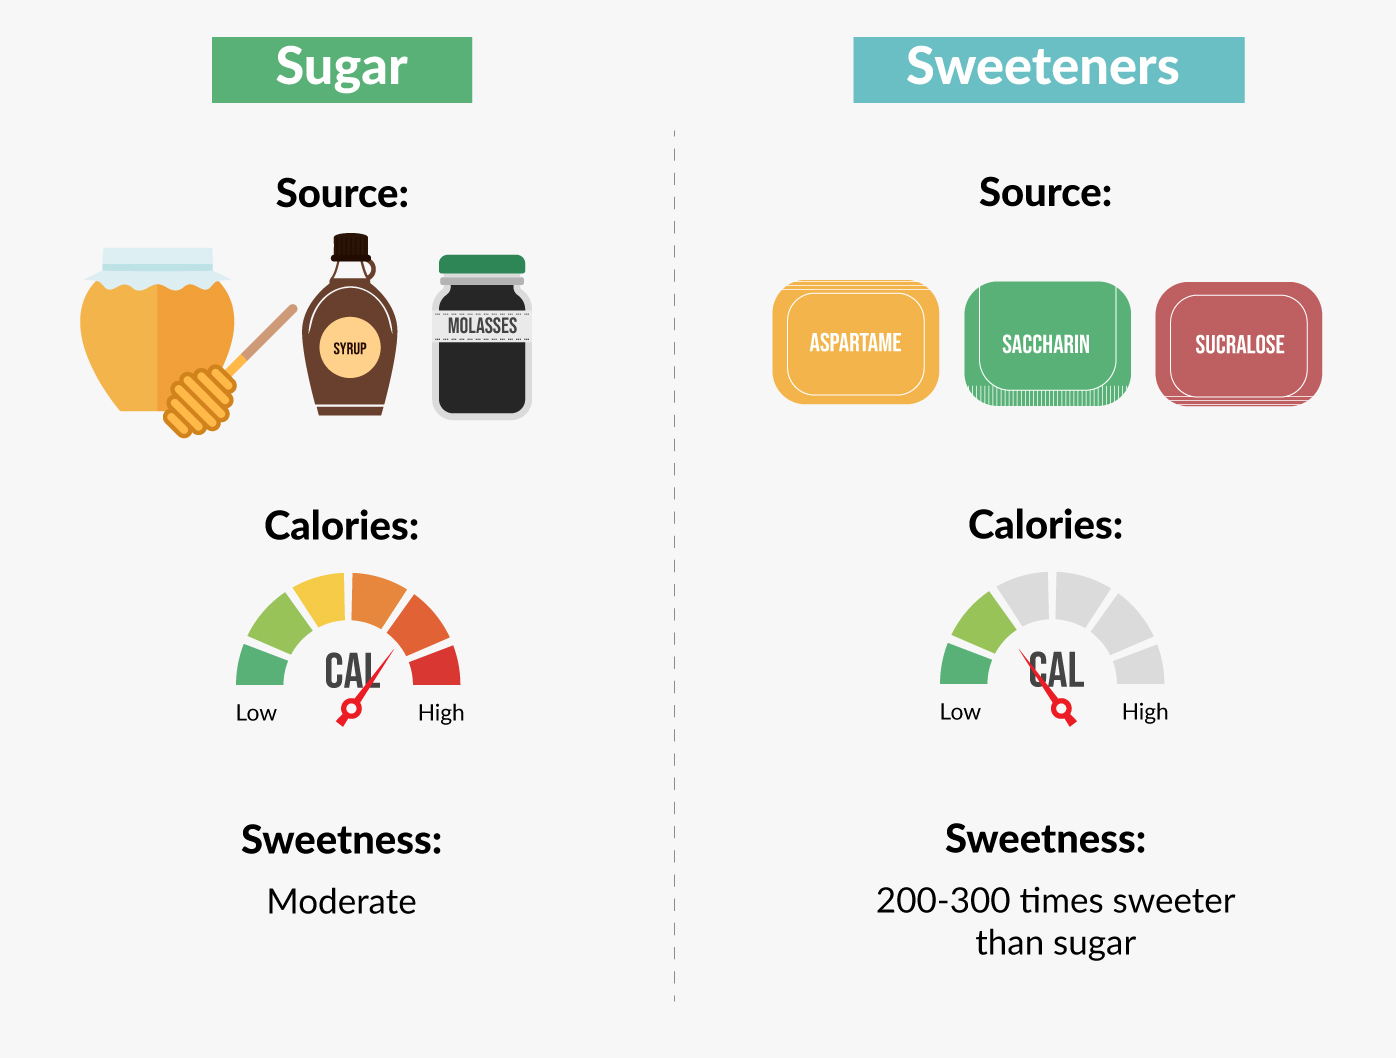 Sugar vs Sweeteners